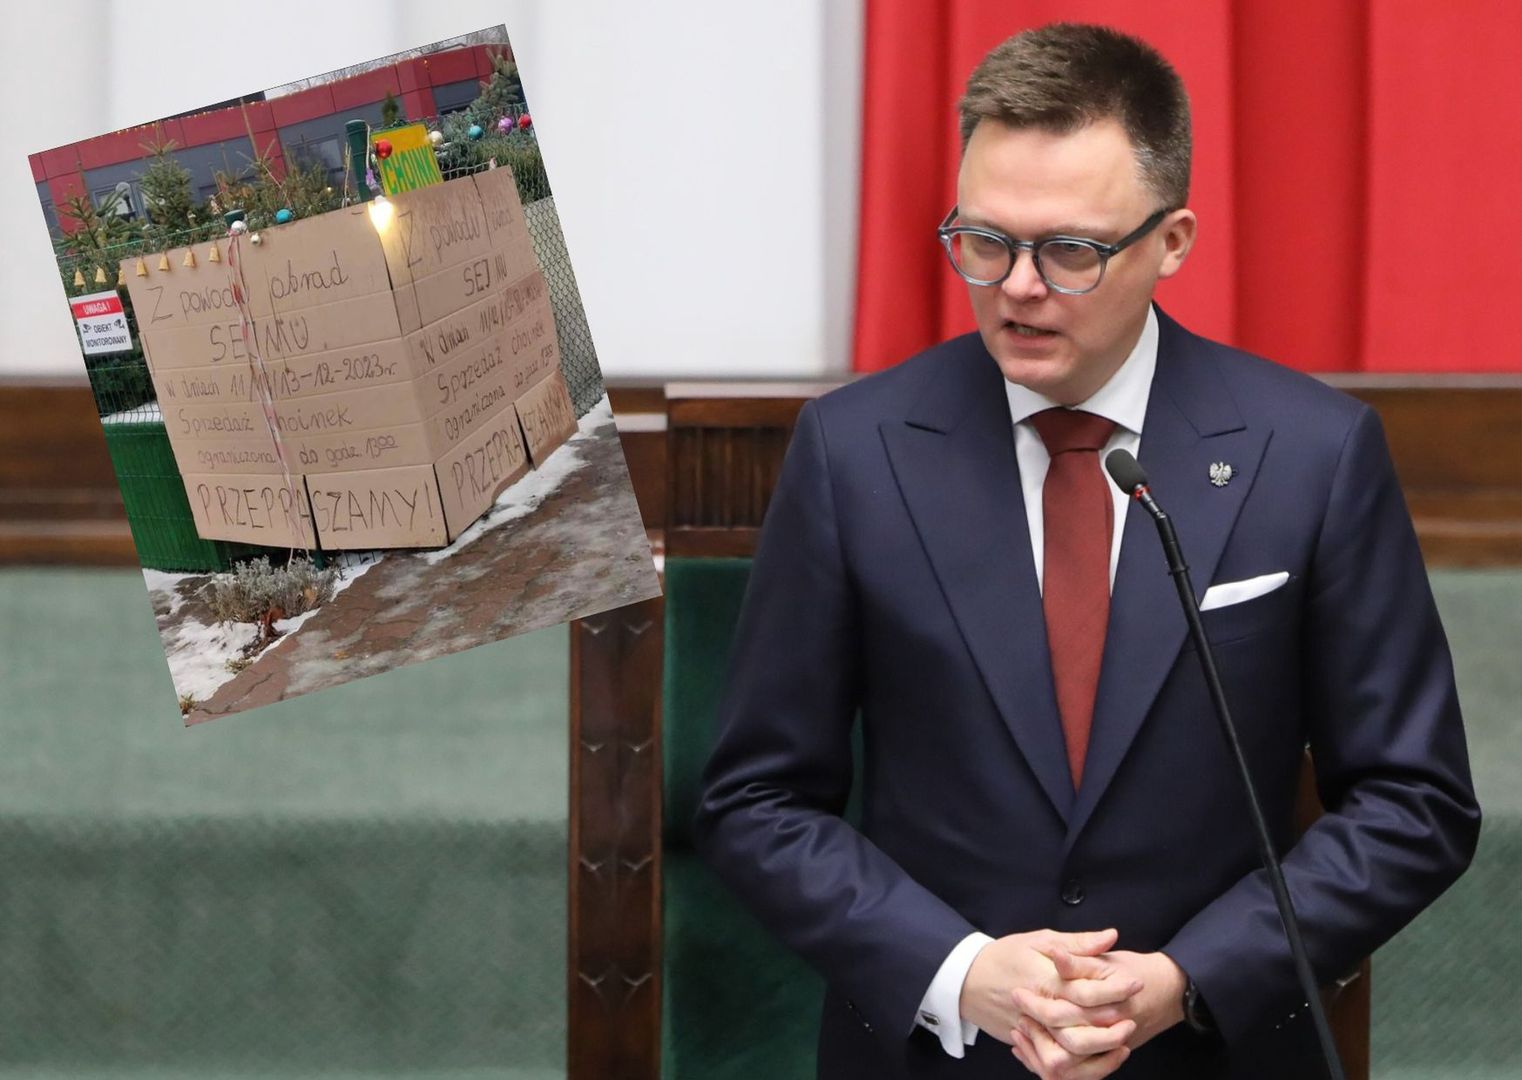 "Z powodu obrad Sejmu". Zdjęcie krąży po sieci